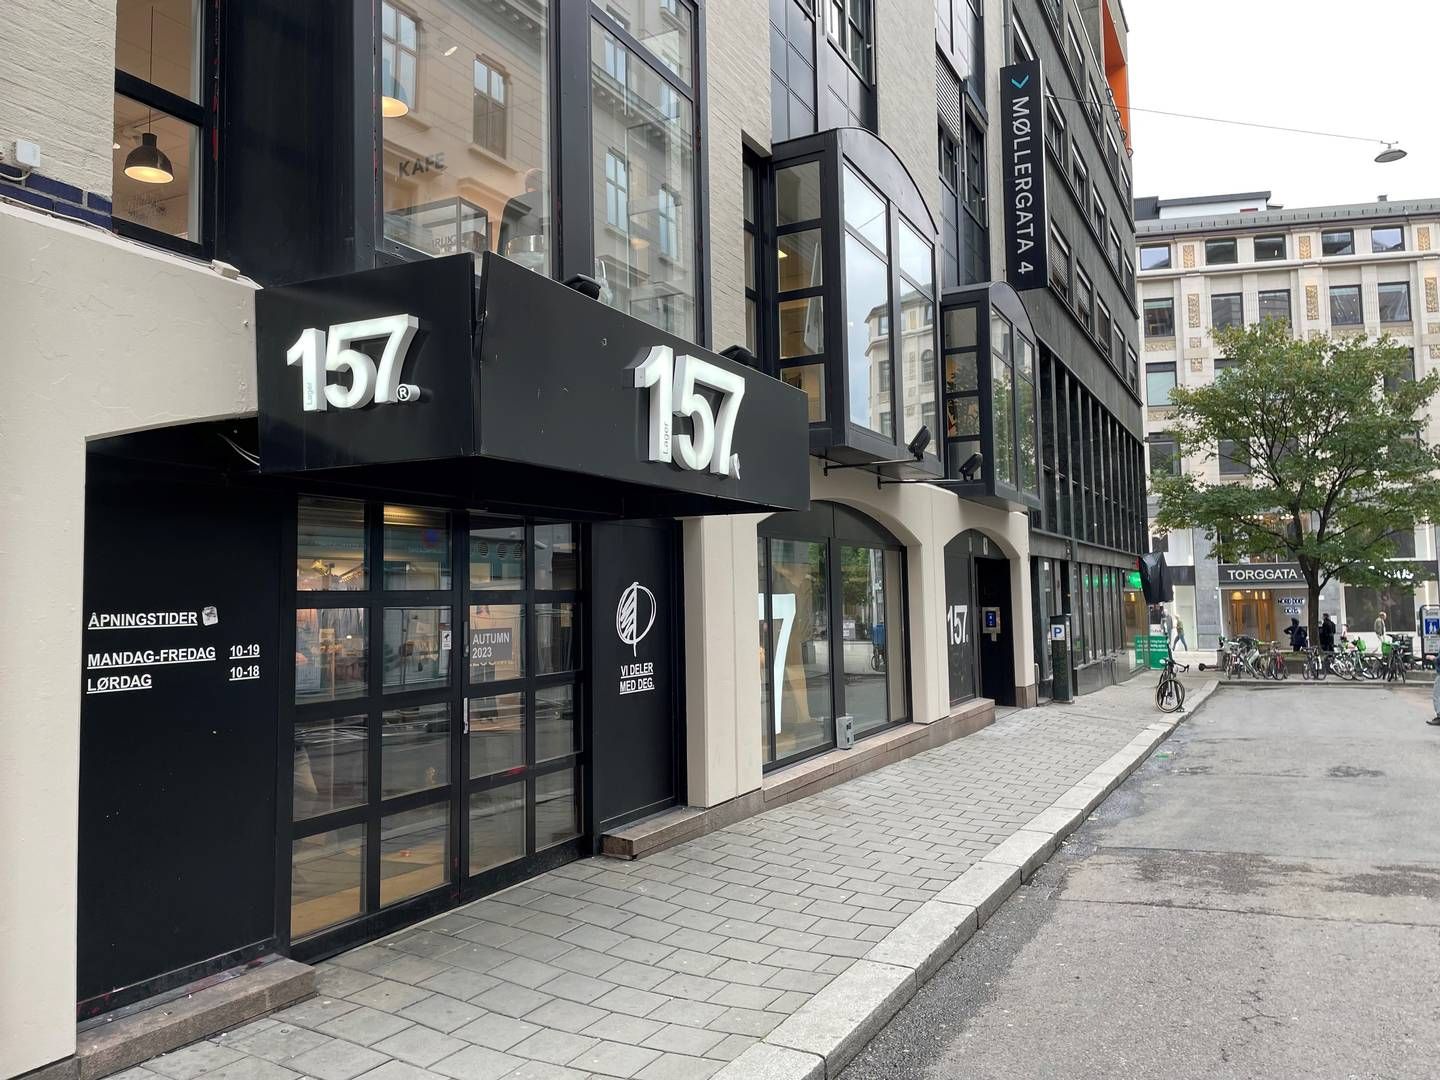 FLYTTER: Lager 157 flytter lokasjon i Oslo. Her fra butikken i Møllergata. | Foto: Vebjørn Storvik / HandelsWatch